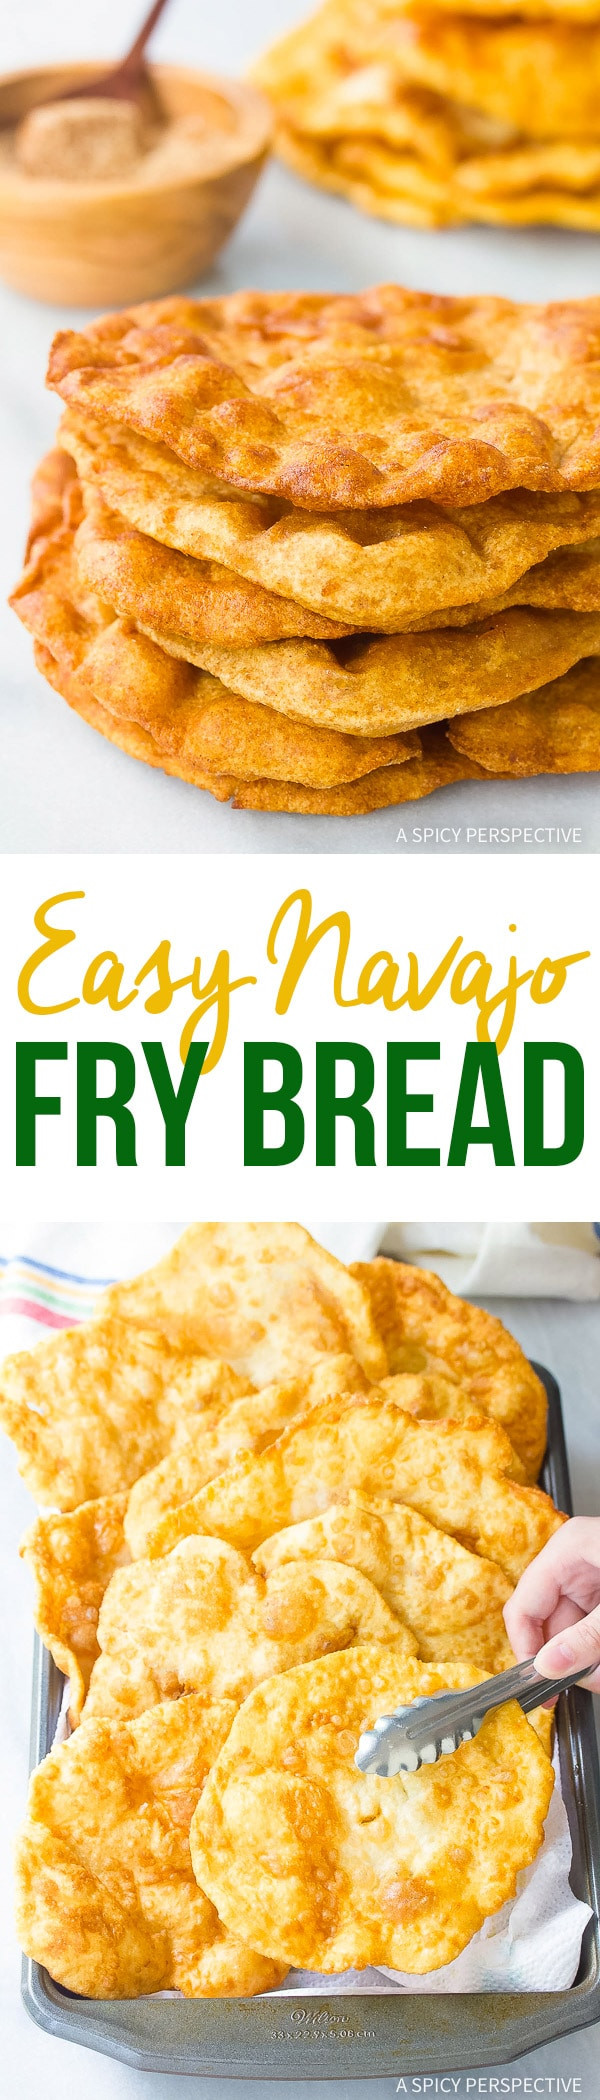 Navajo Fry Bread Recipe
 Easy Navajo Fry Bread A Spicy Perspective